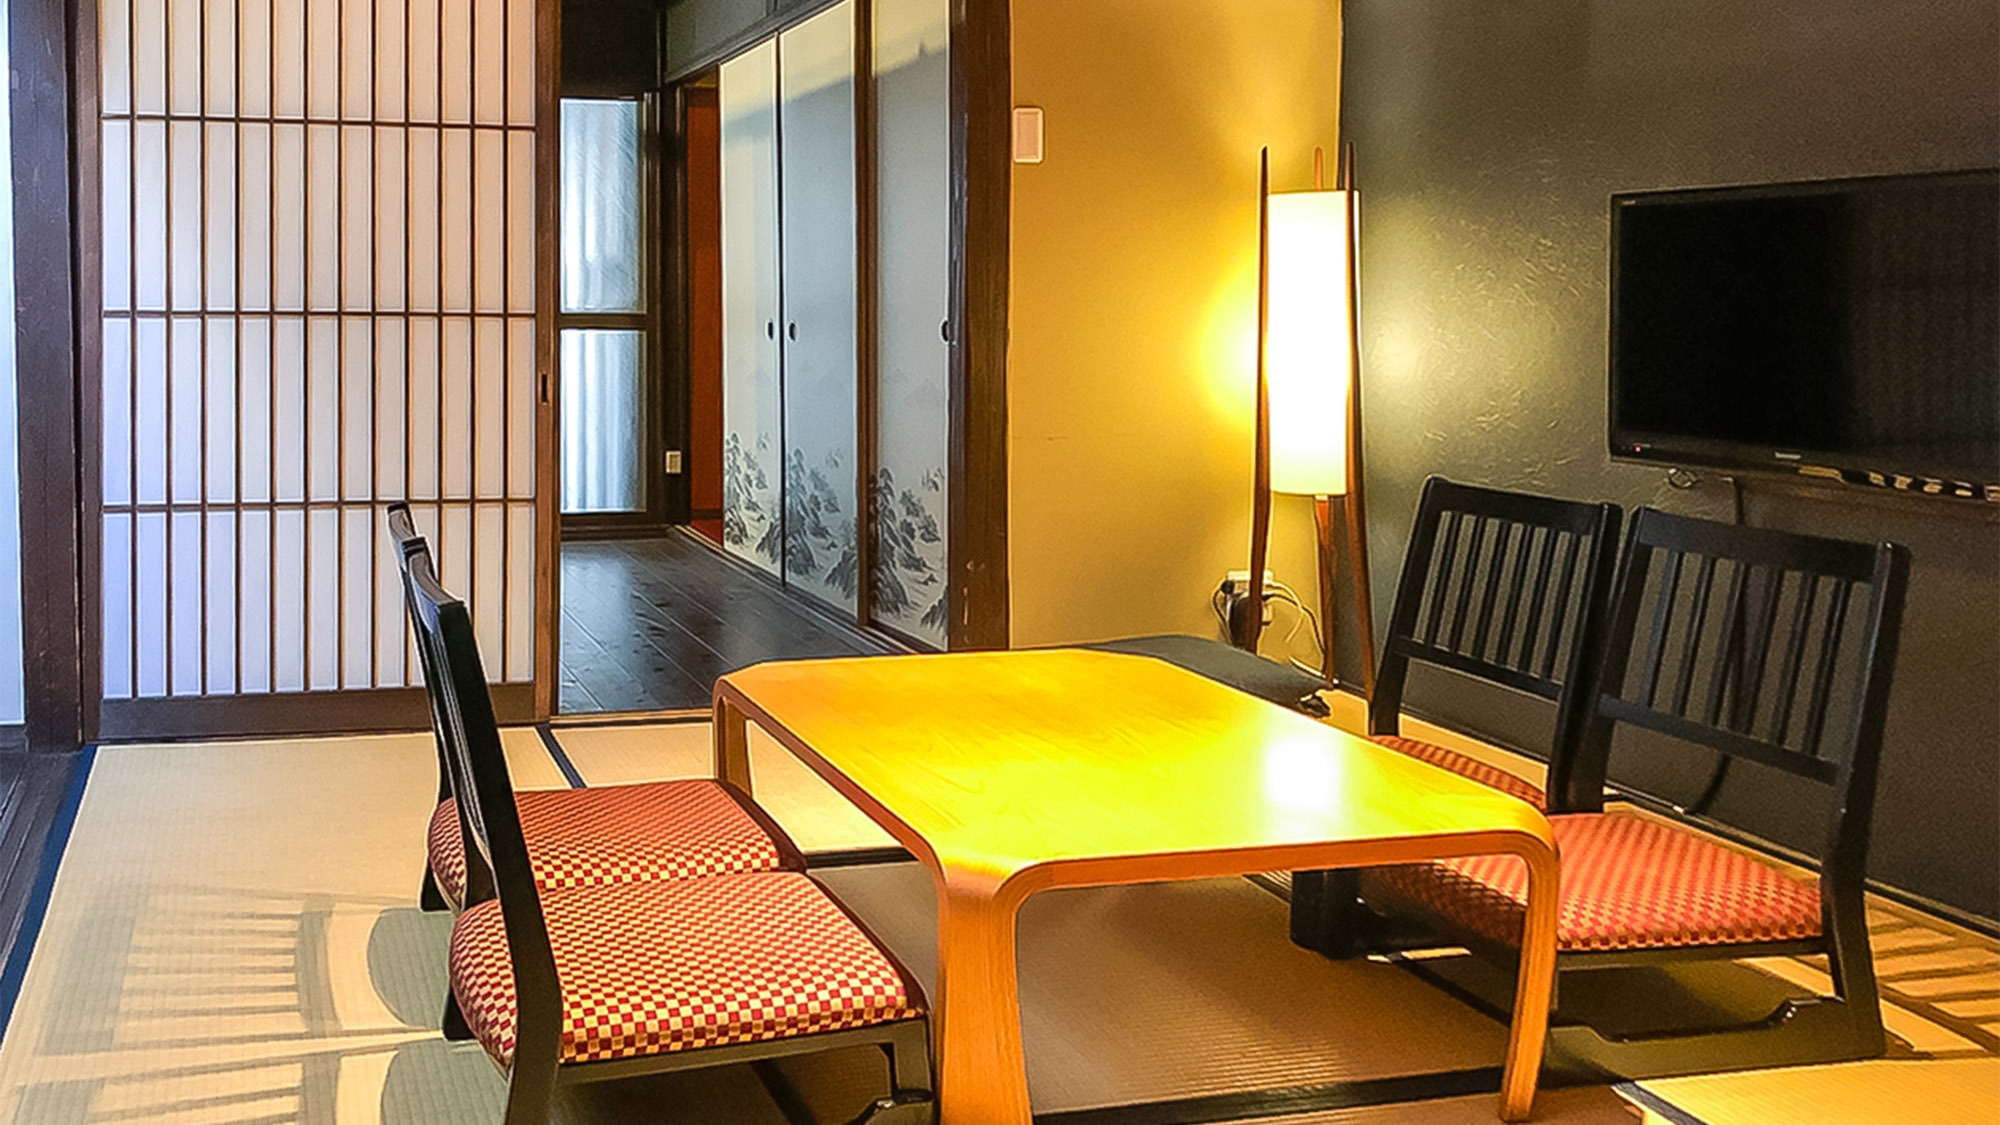 【素泊】築80年の京町家で過ごす、あなただけの京都旅。1日1組限定で安心安全の滞在を